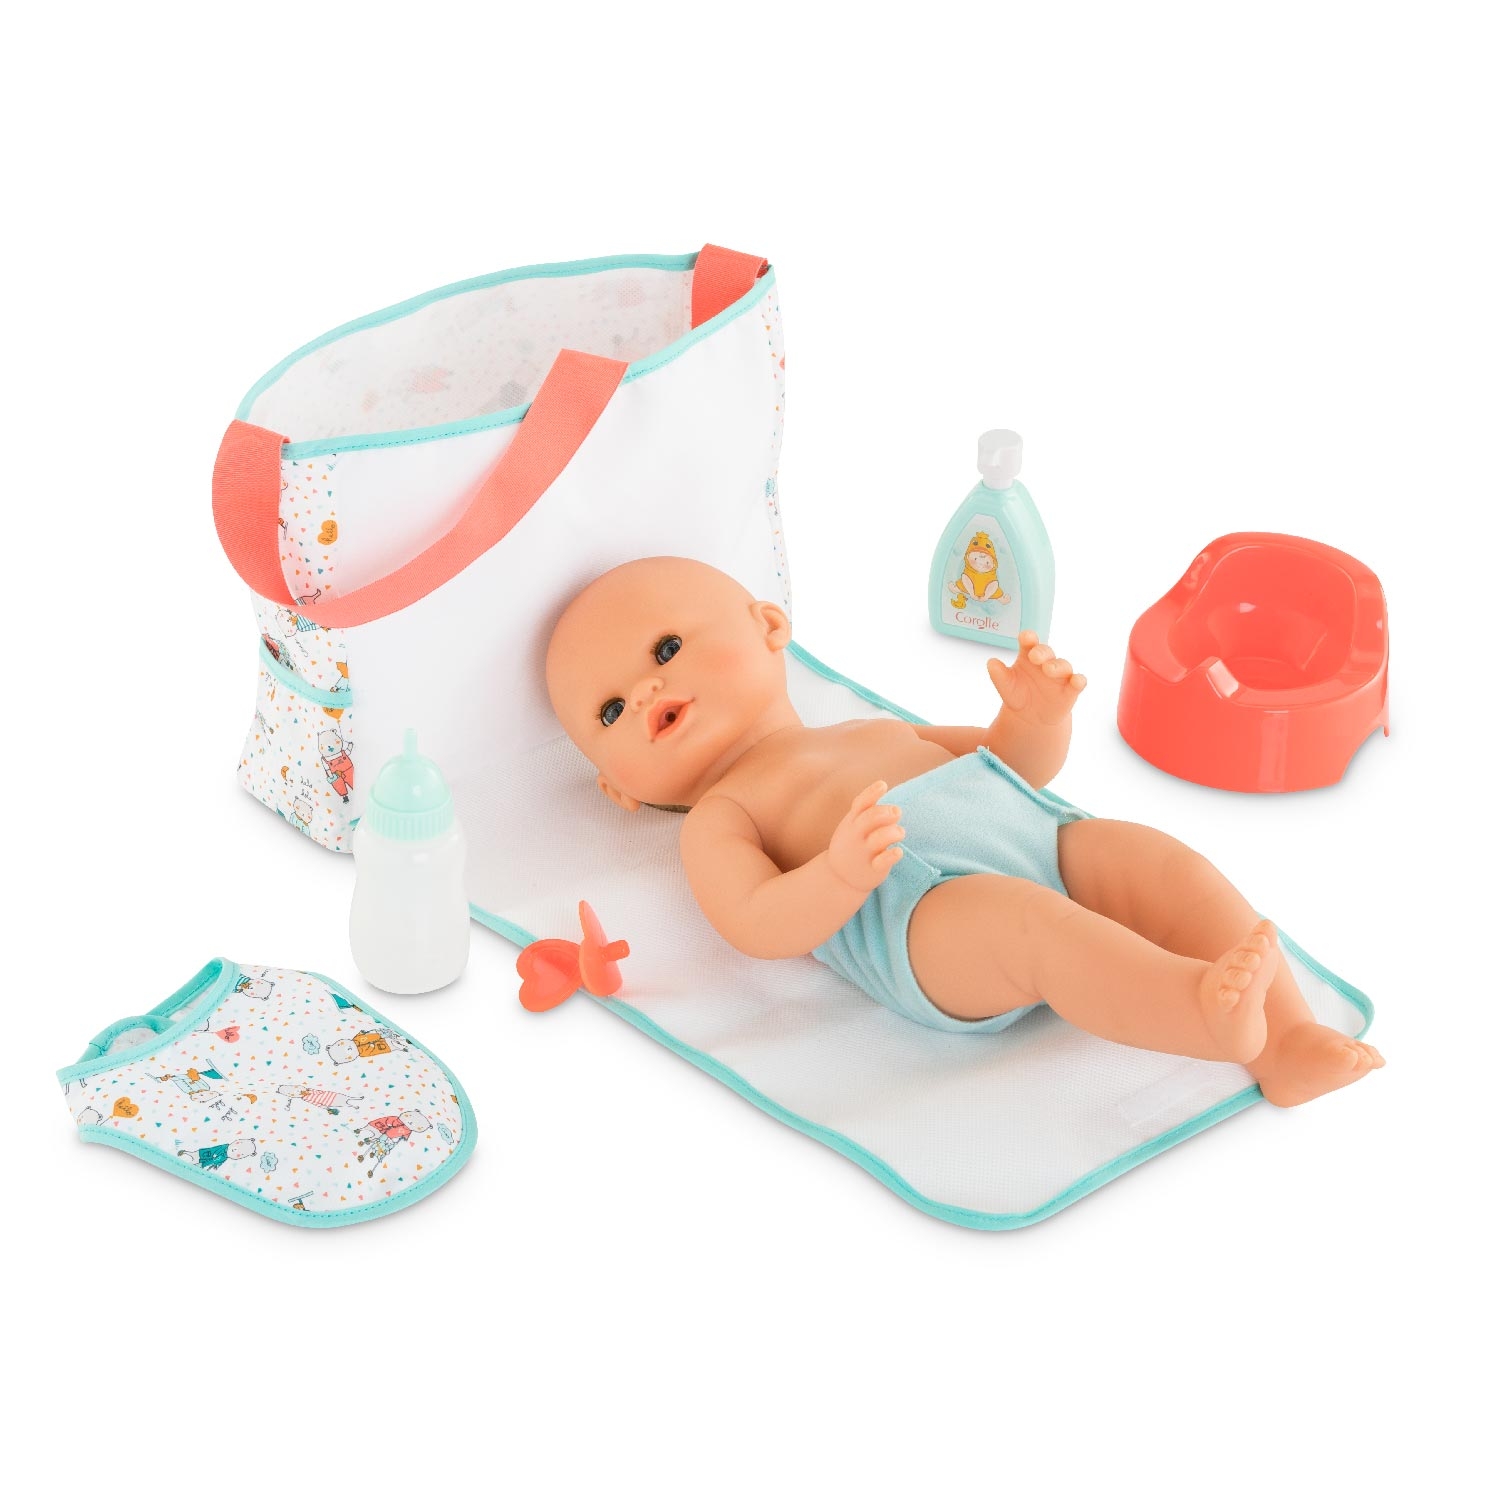 Porte bébé Corolle pour poupon 36 cm - Accessoire poupée - Achat